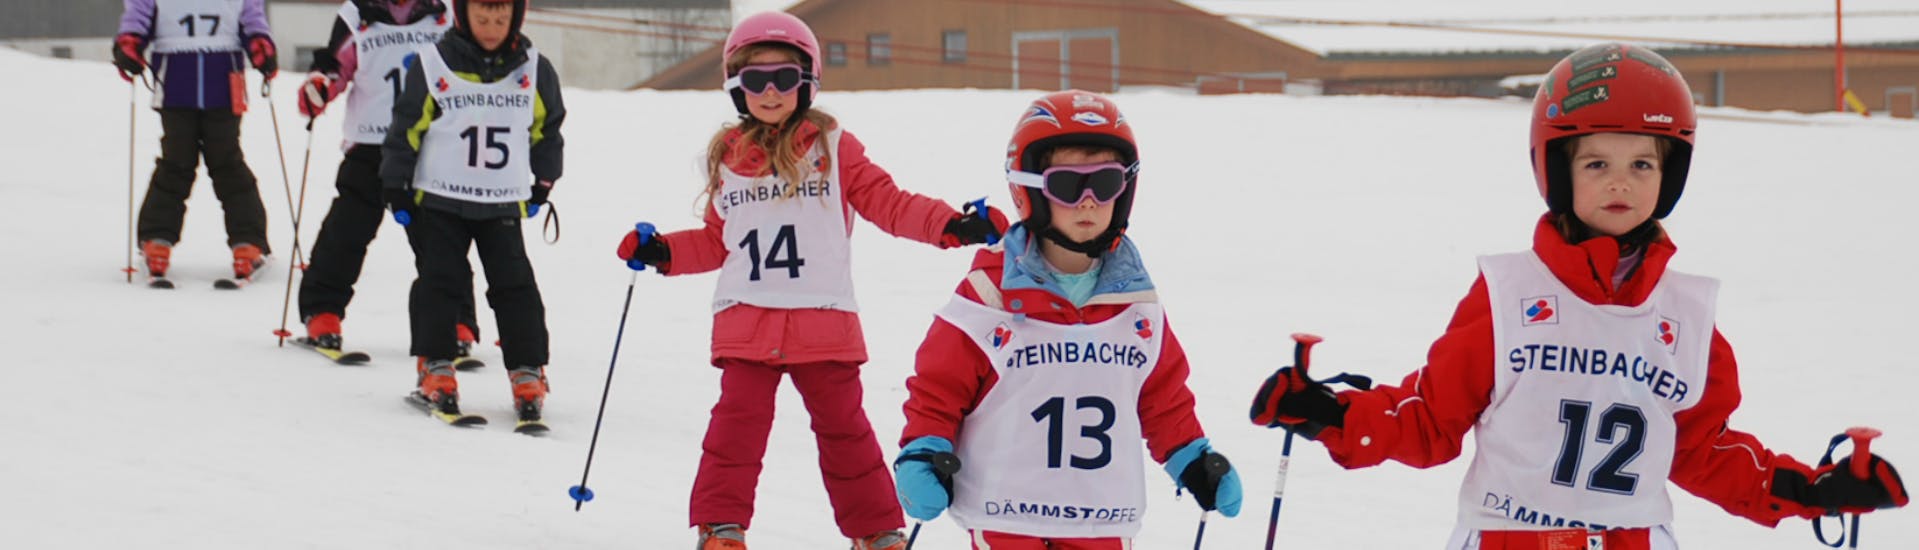 Lezioni di sci per bambini a partire da 4 anni per principianti con Ski School Ski Total Kirchdorf.